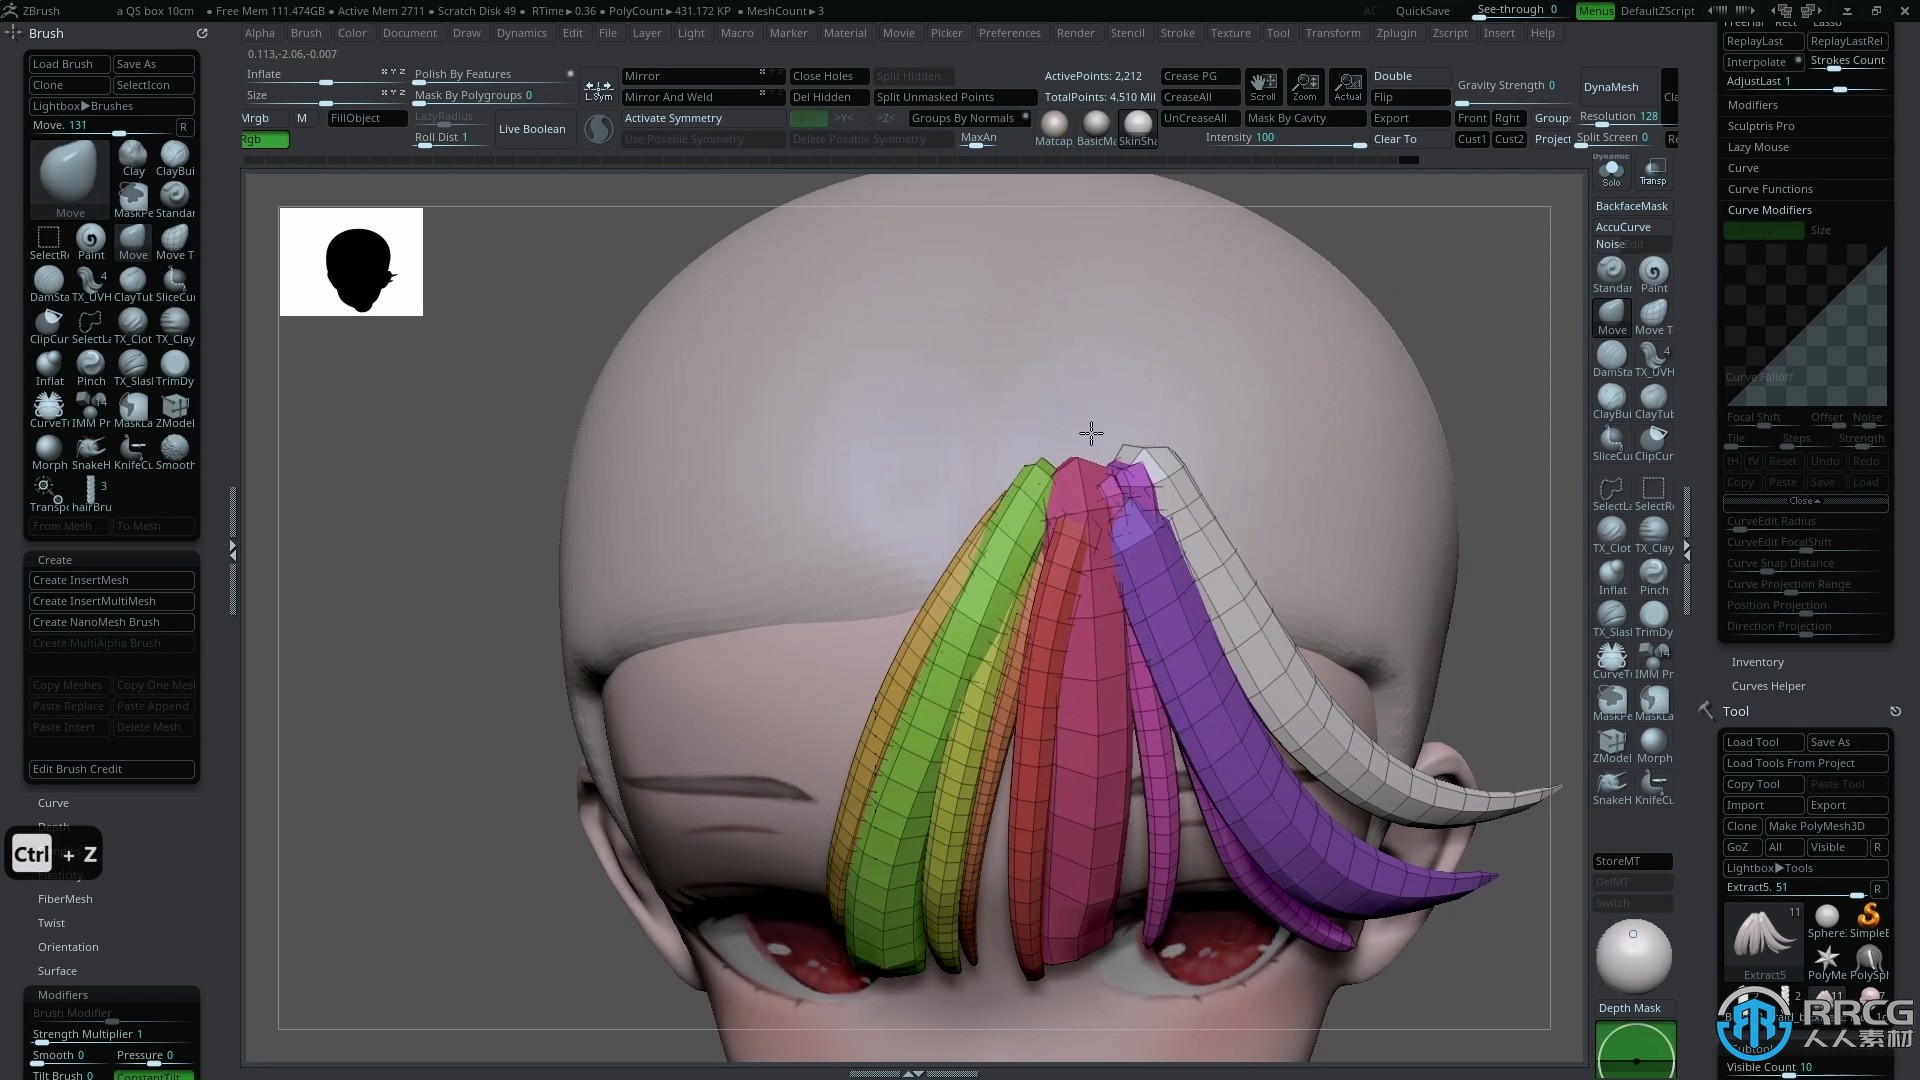 ZBrush将动漫人物转化为3D打印模型技术视频教程